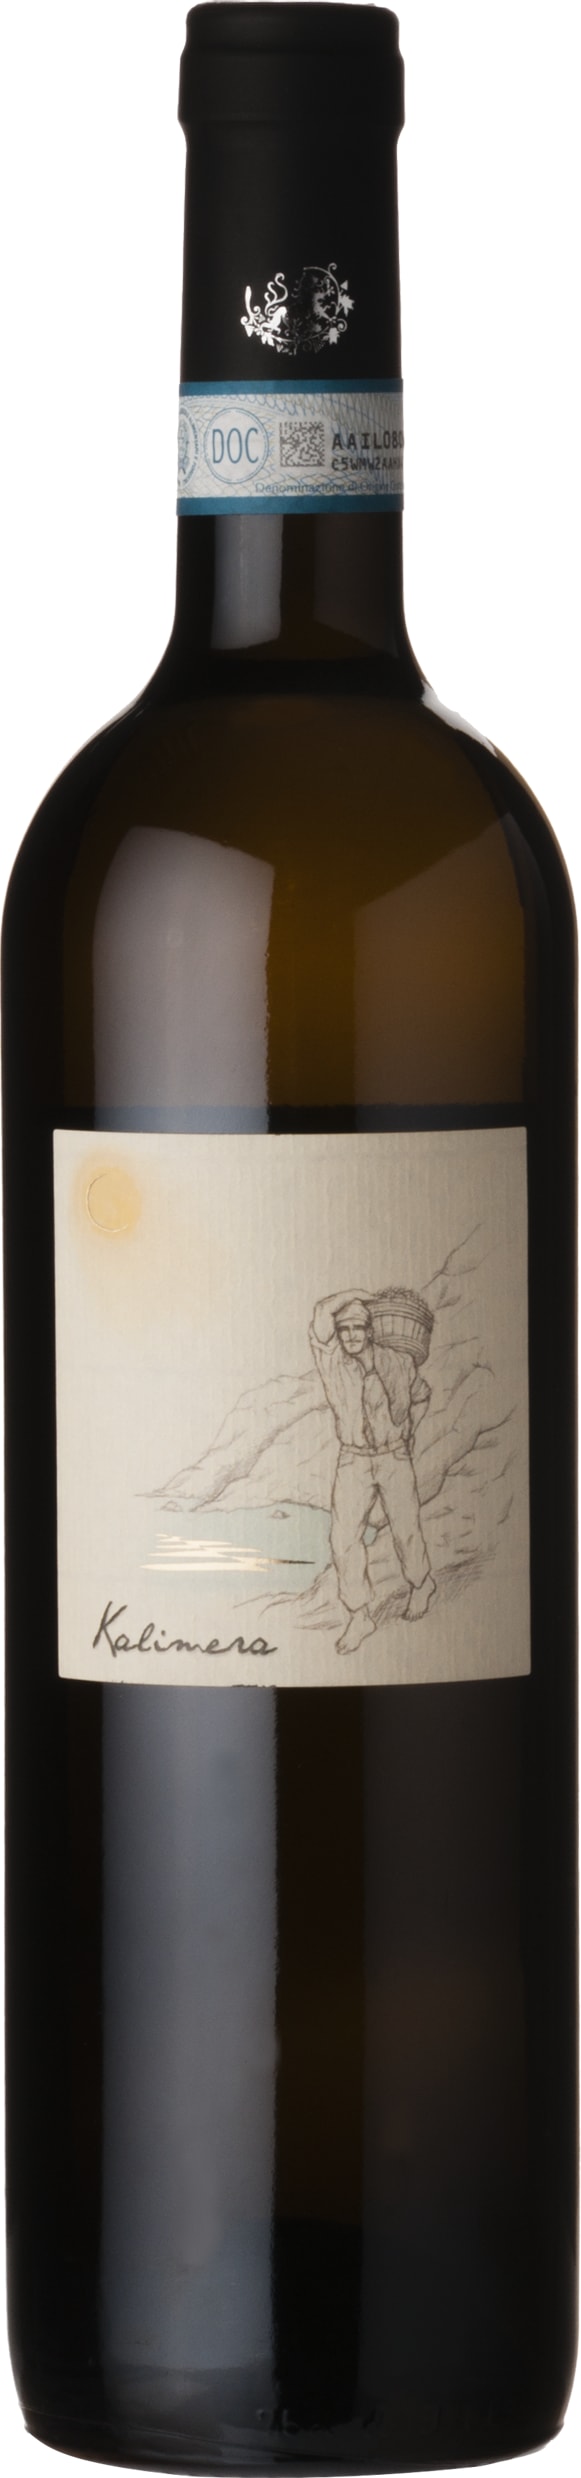 Cenatiempo Kalimera Biancolella Ischia DOC 2021 6x75cl - Just Wines 